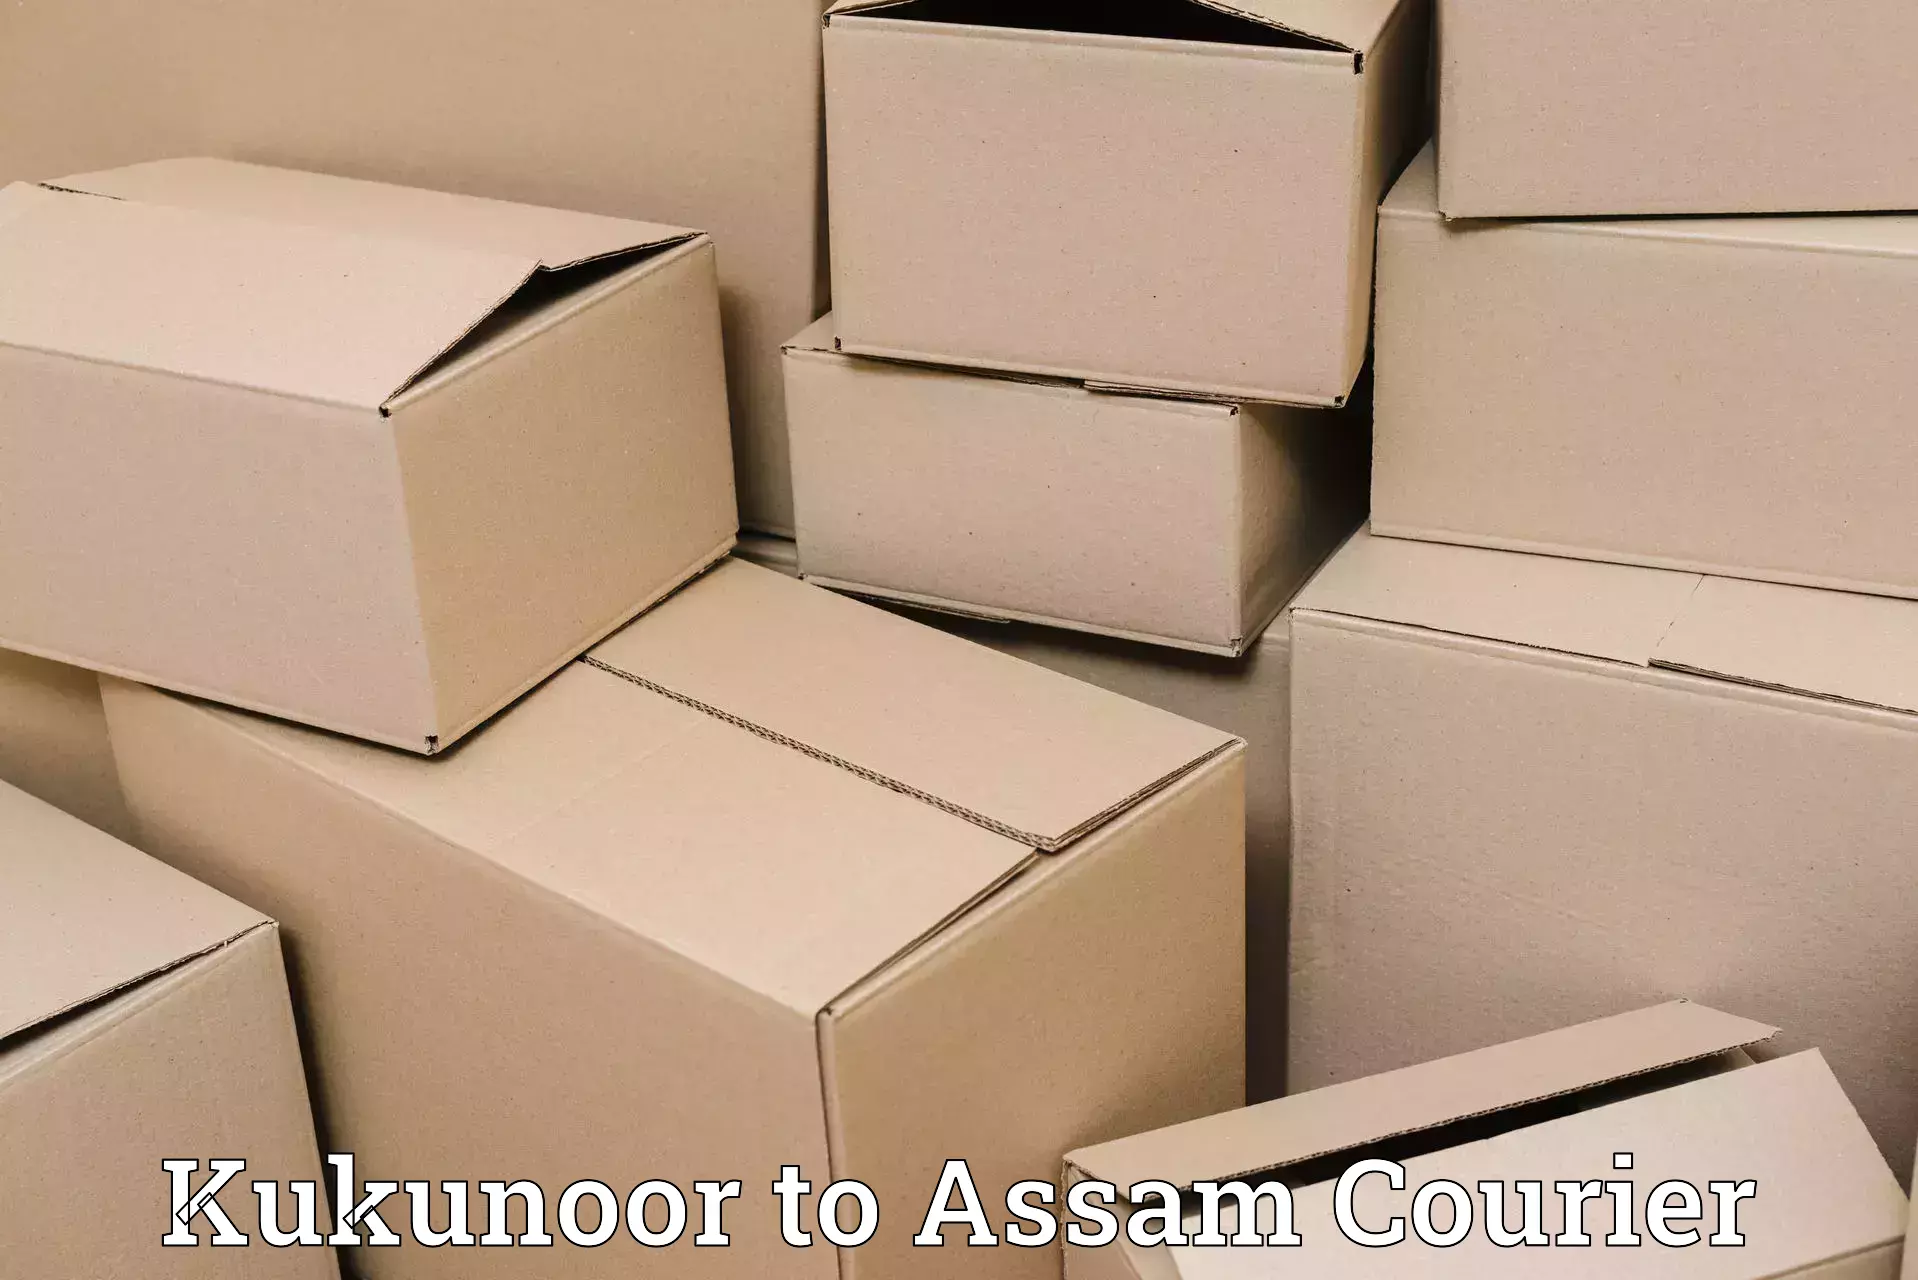 Ocean freight courier Kukunoor to Dhubri